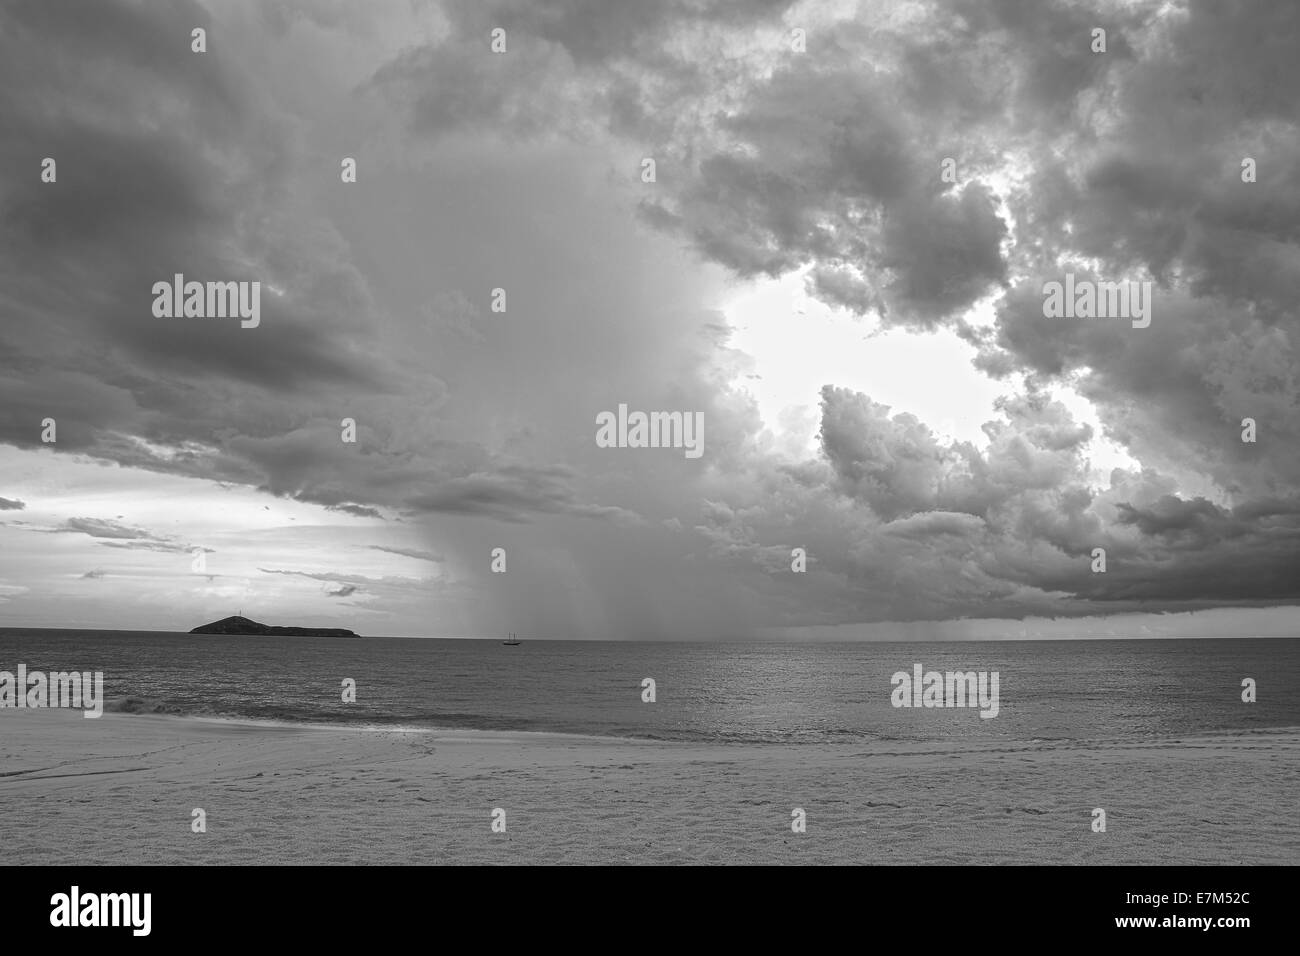 Dramatische Gewitterhimmel über dem Meer an einem einsamen Strand getan in schwarz / weiß Stockfoto